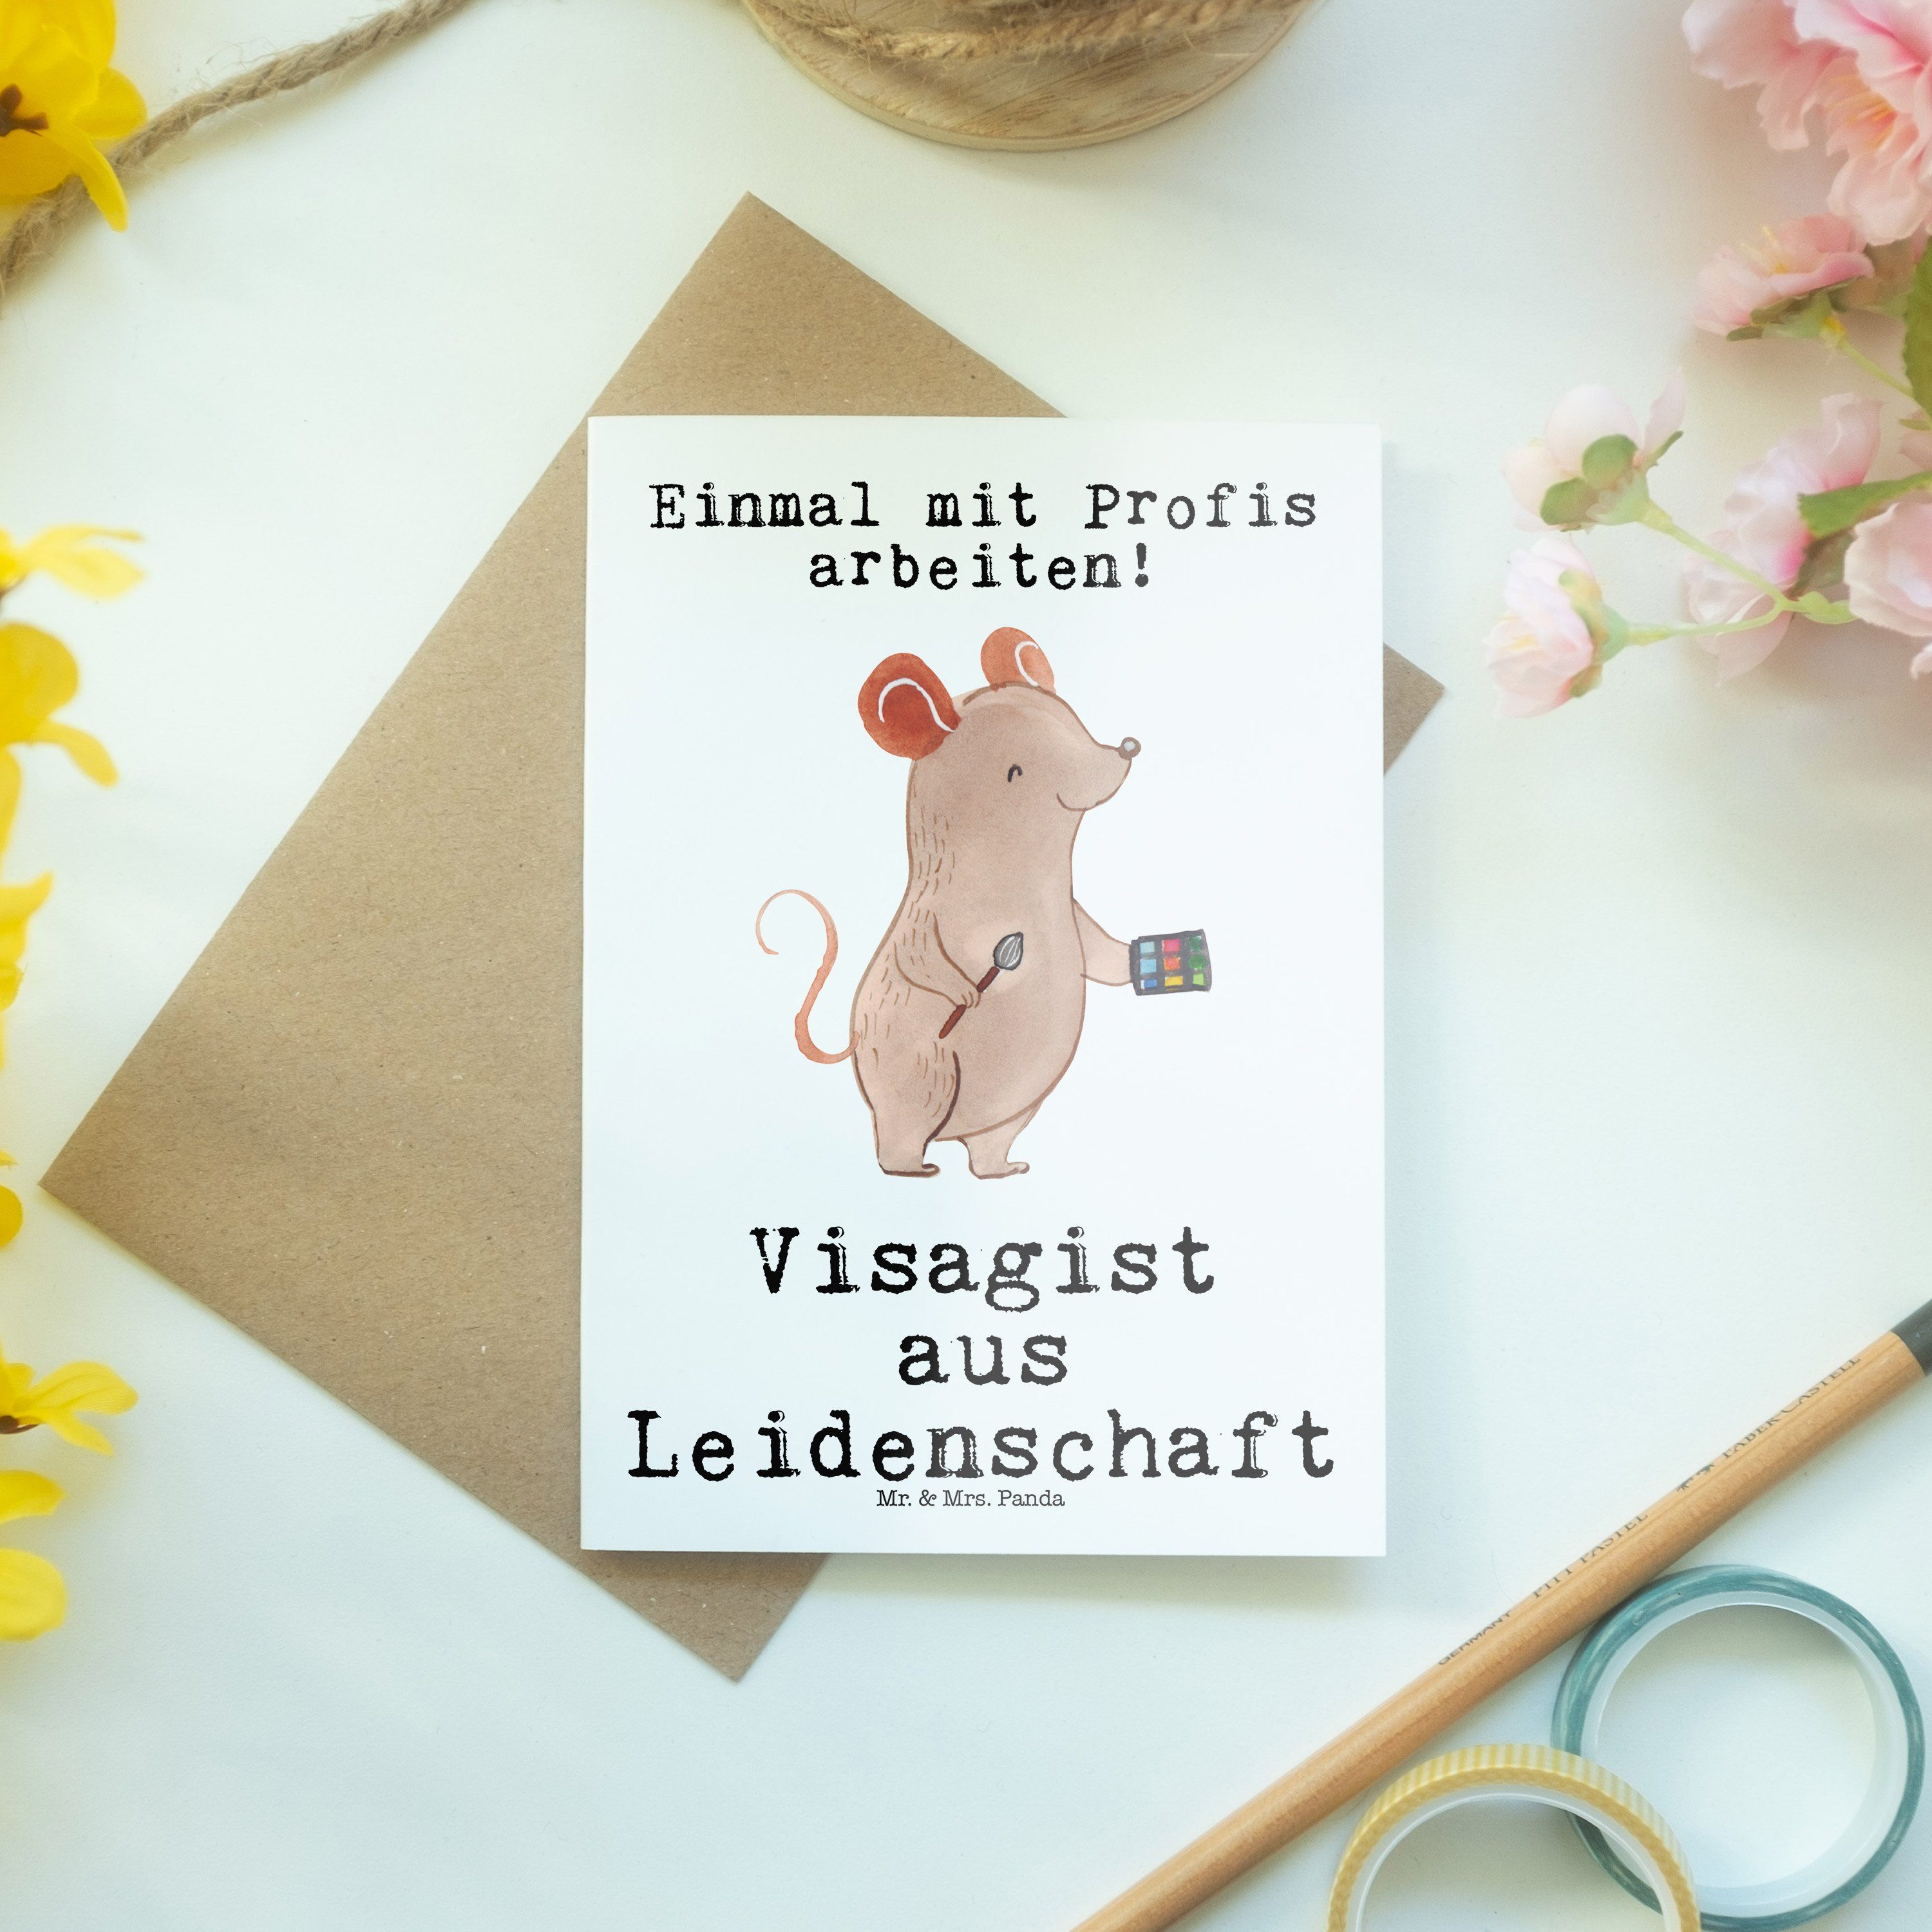 Up Panda Mr. aus & Artist - Leidenschaft Visagist - Weiß Make Abschied, Geschenk, Grußkarte Mrs.